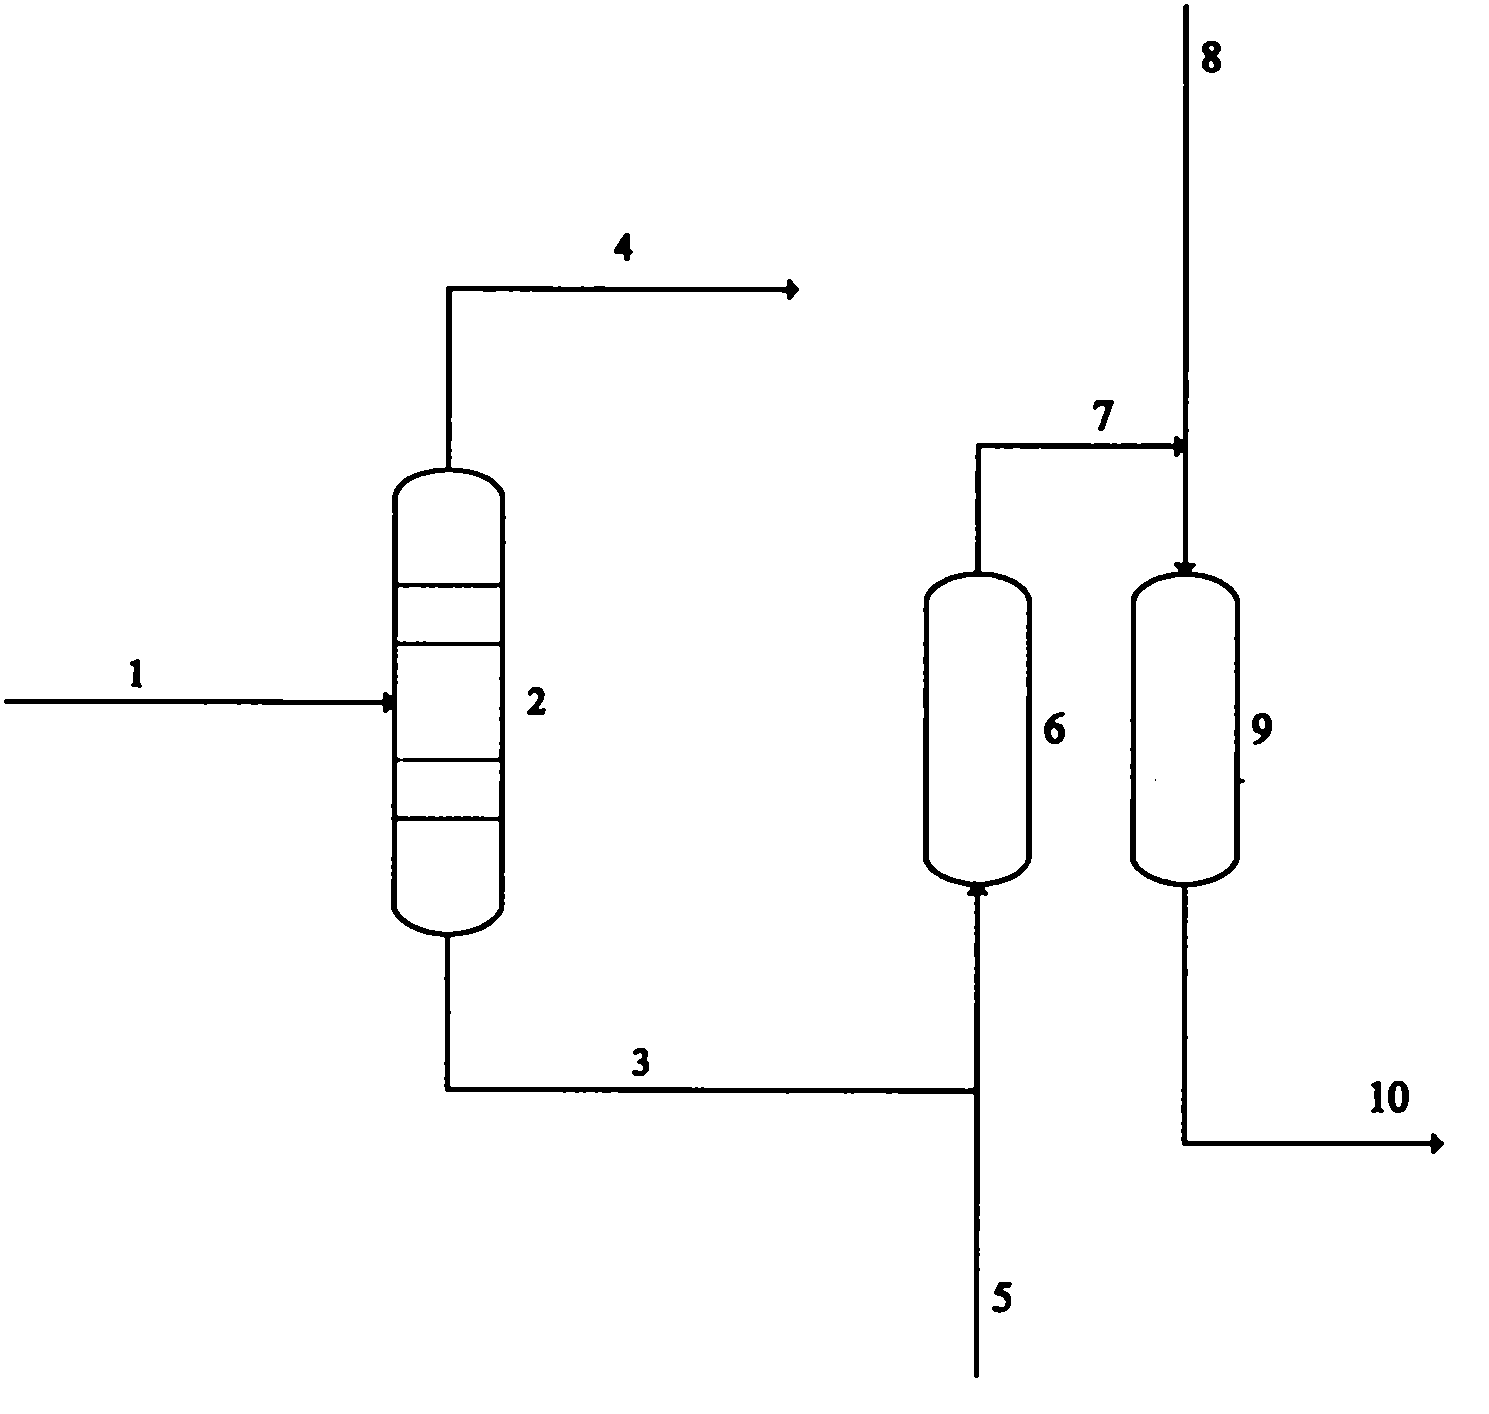 Method for preparing 3-aminomethyl-3,5,5-trimethyl cyclohexylamine